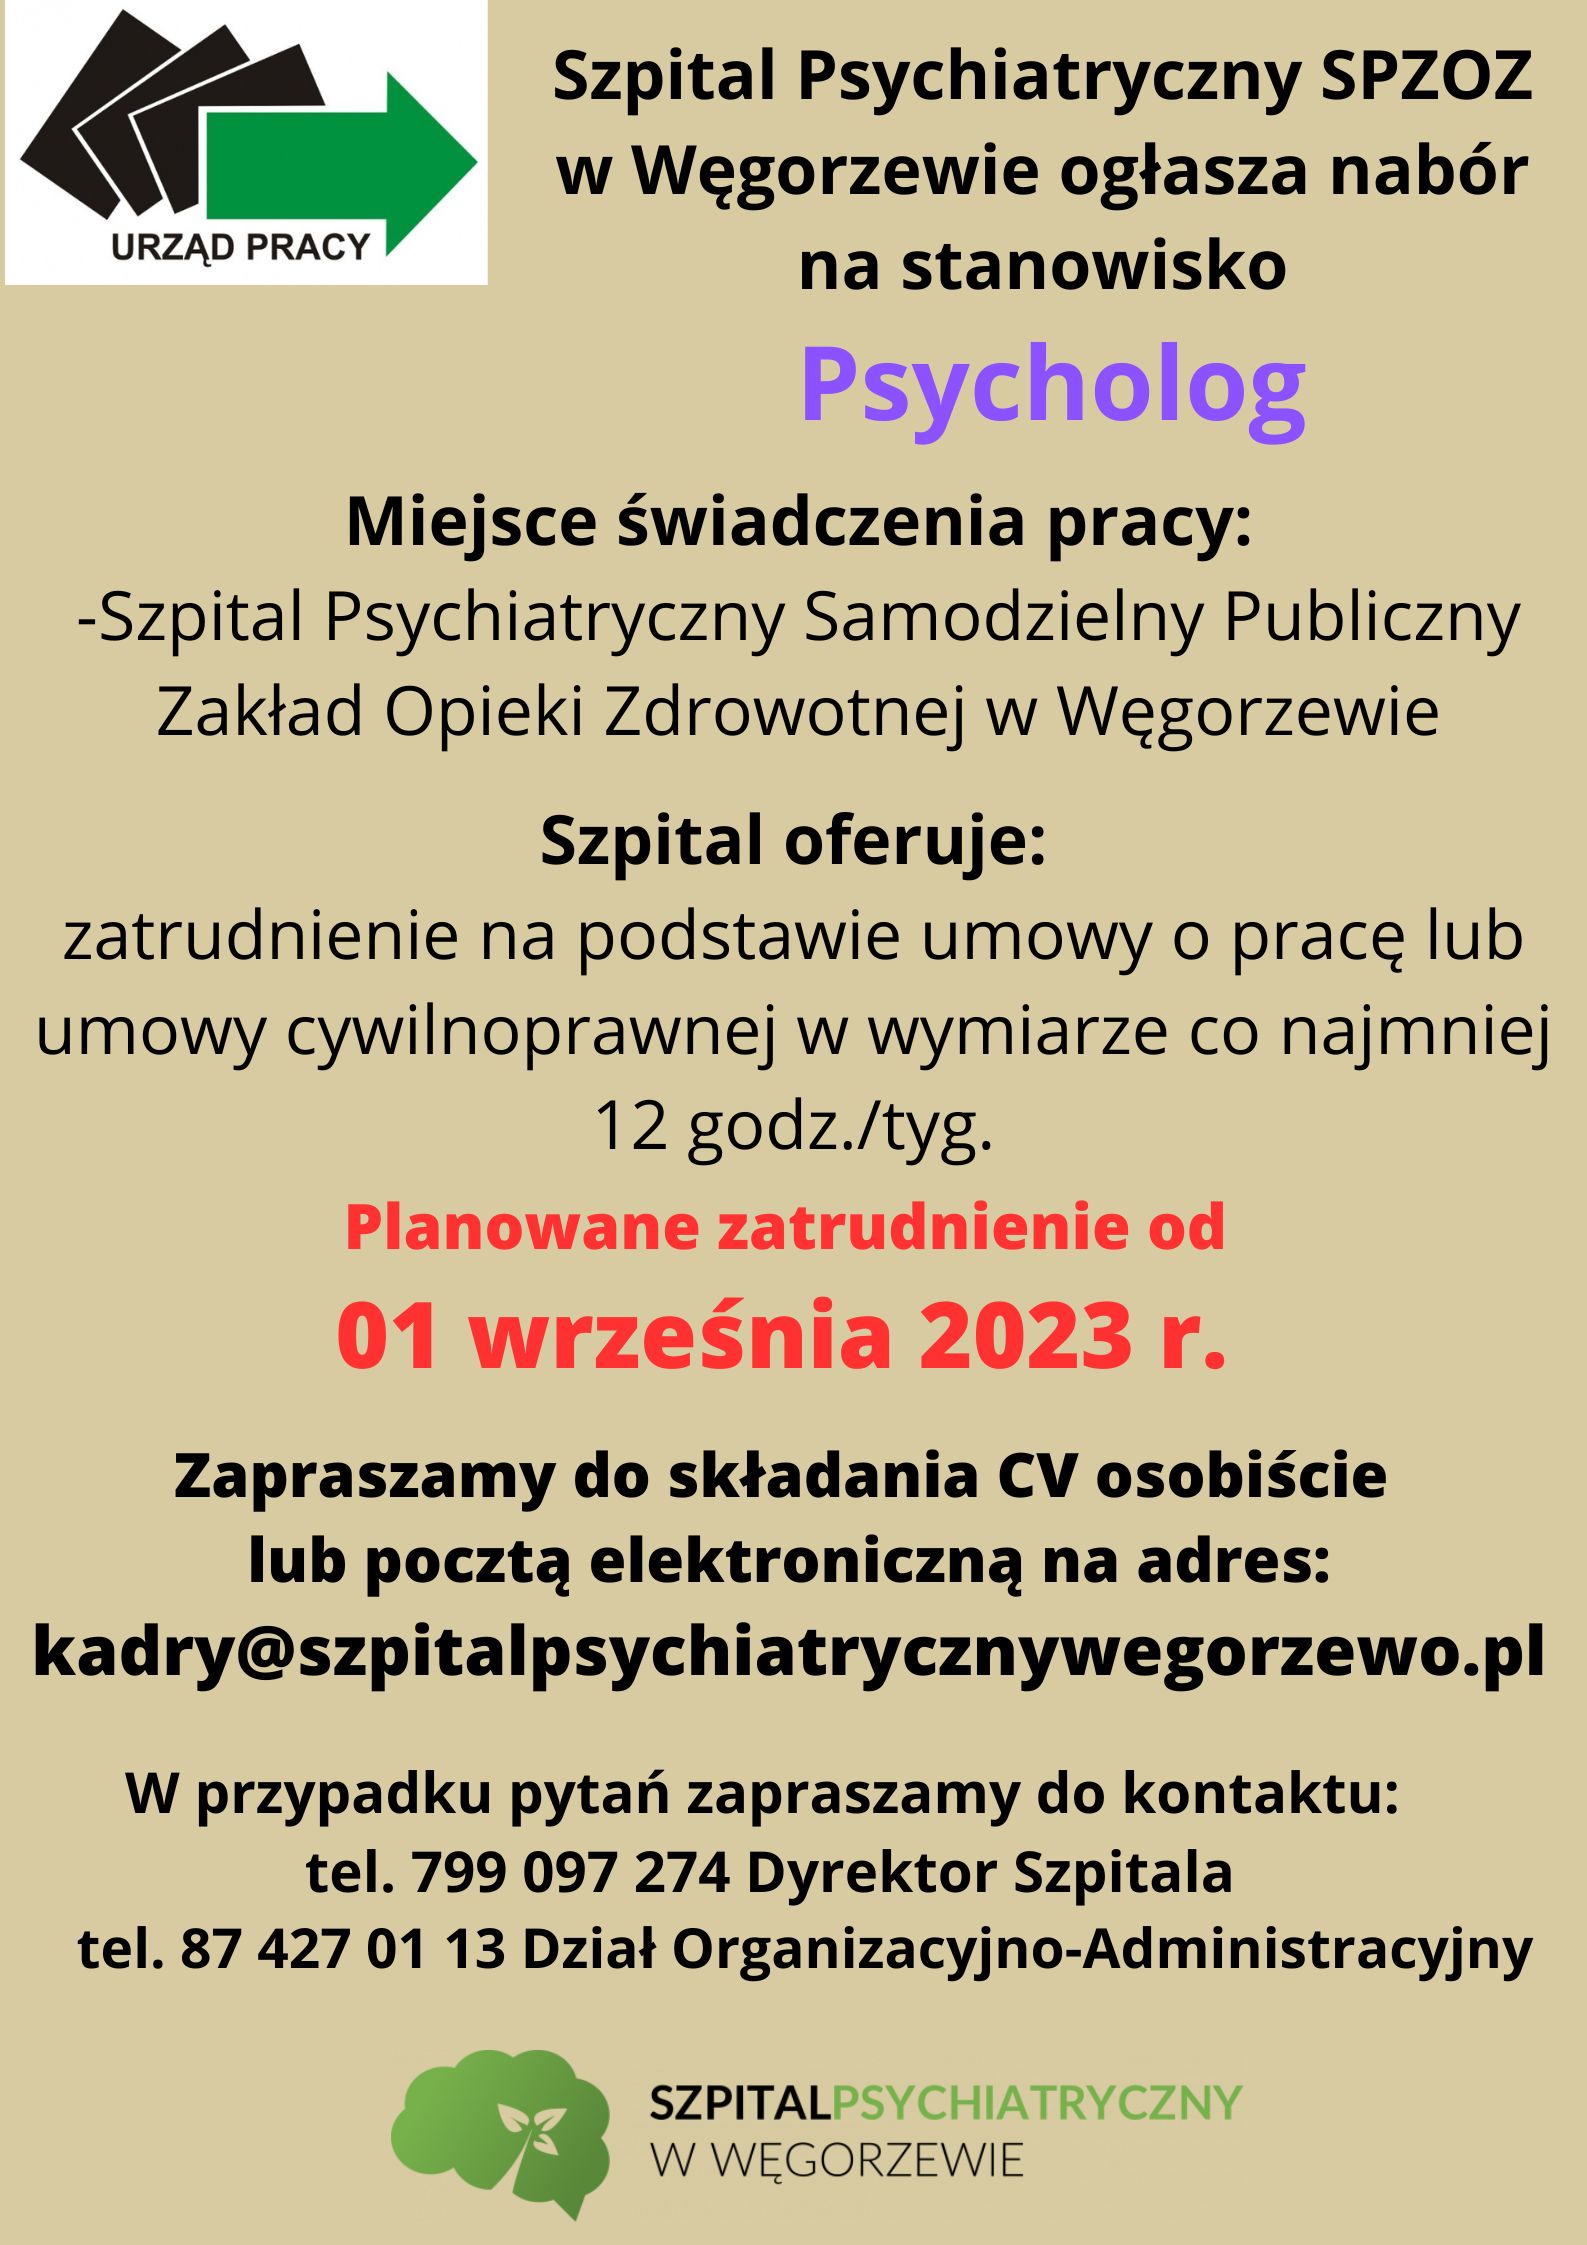 psycholog